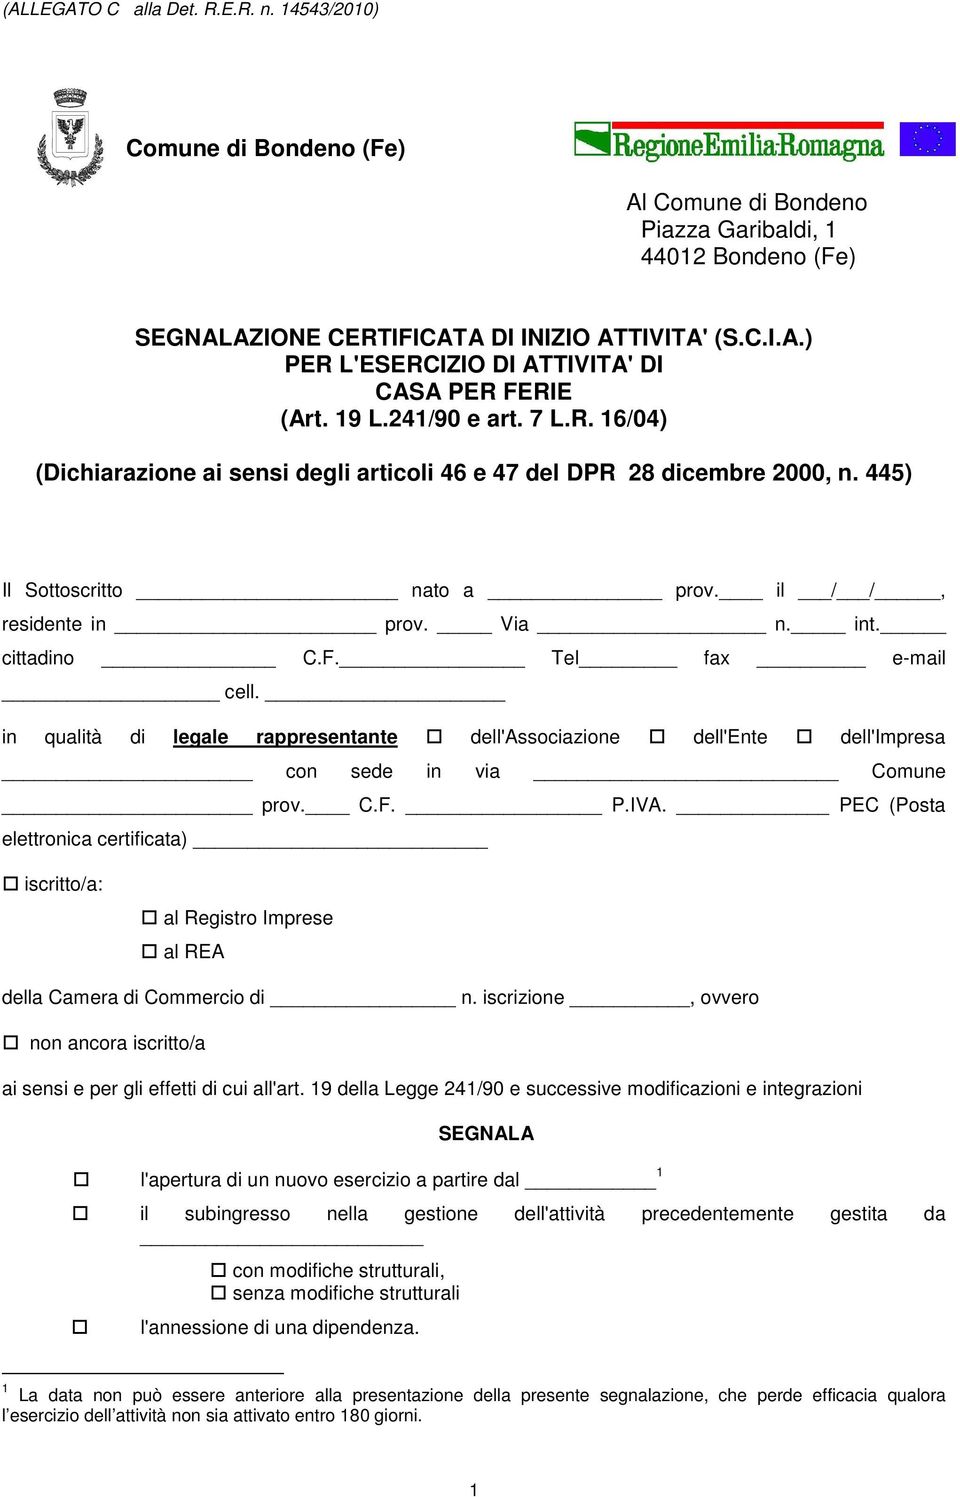 Tel fax e-mail cell. in qualità di legale rappresentante dell'associazione dell'ente dell'impresa con sede in via Comune prov. C.F. P.IVA.